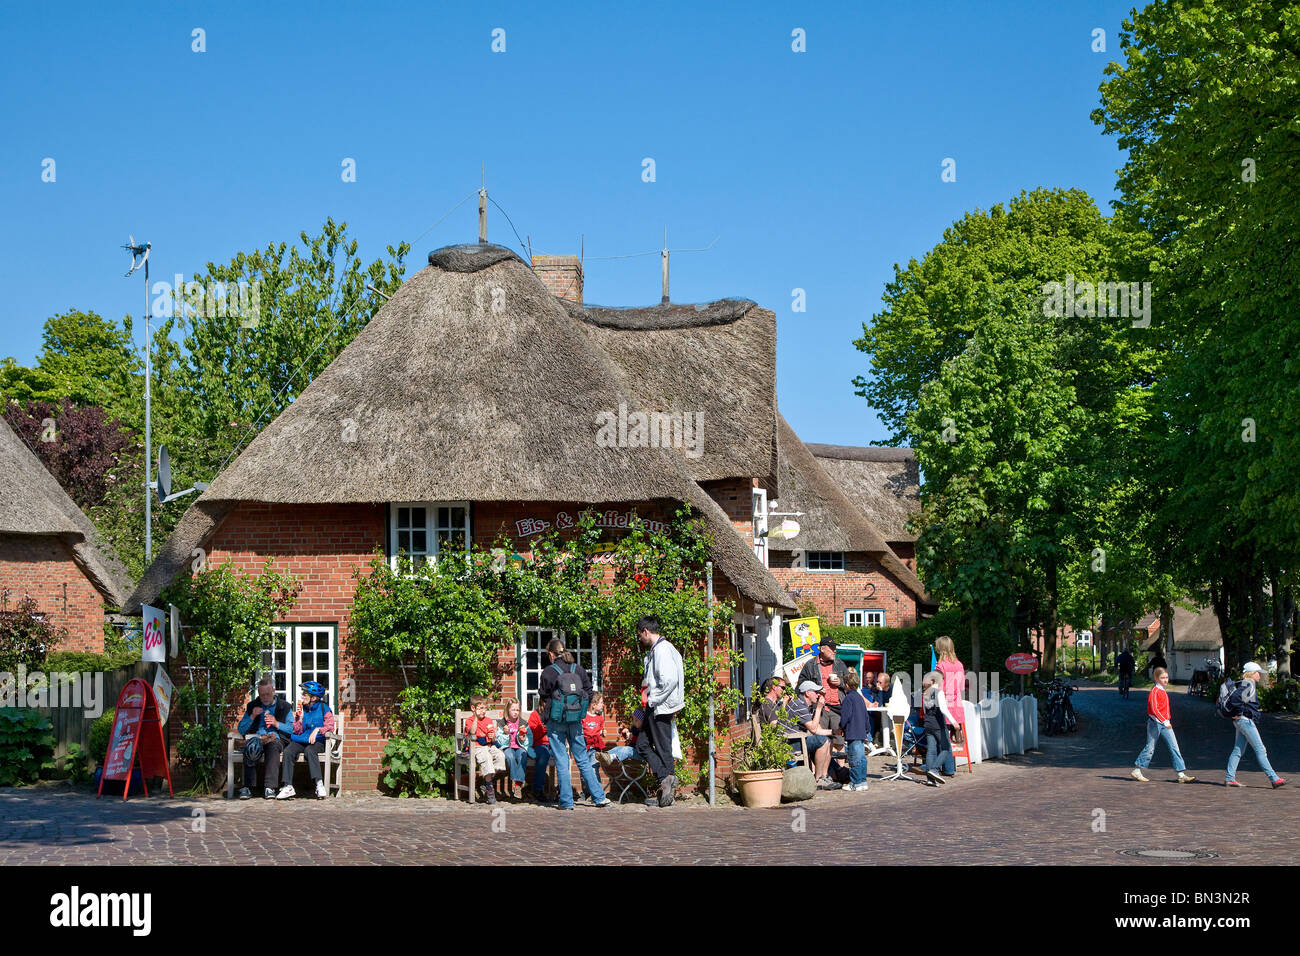 Gruppe von Personen vor einem friesische Haus Nieblum, Föhr, Schleswig-Holstein, Deutschland Stockfoto